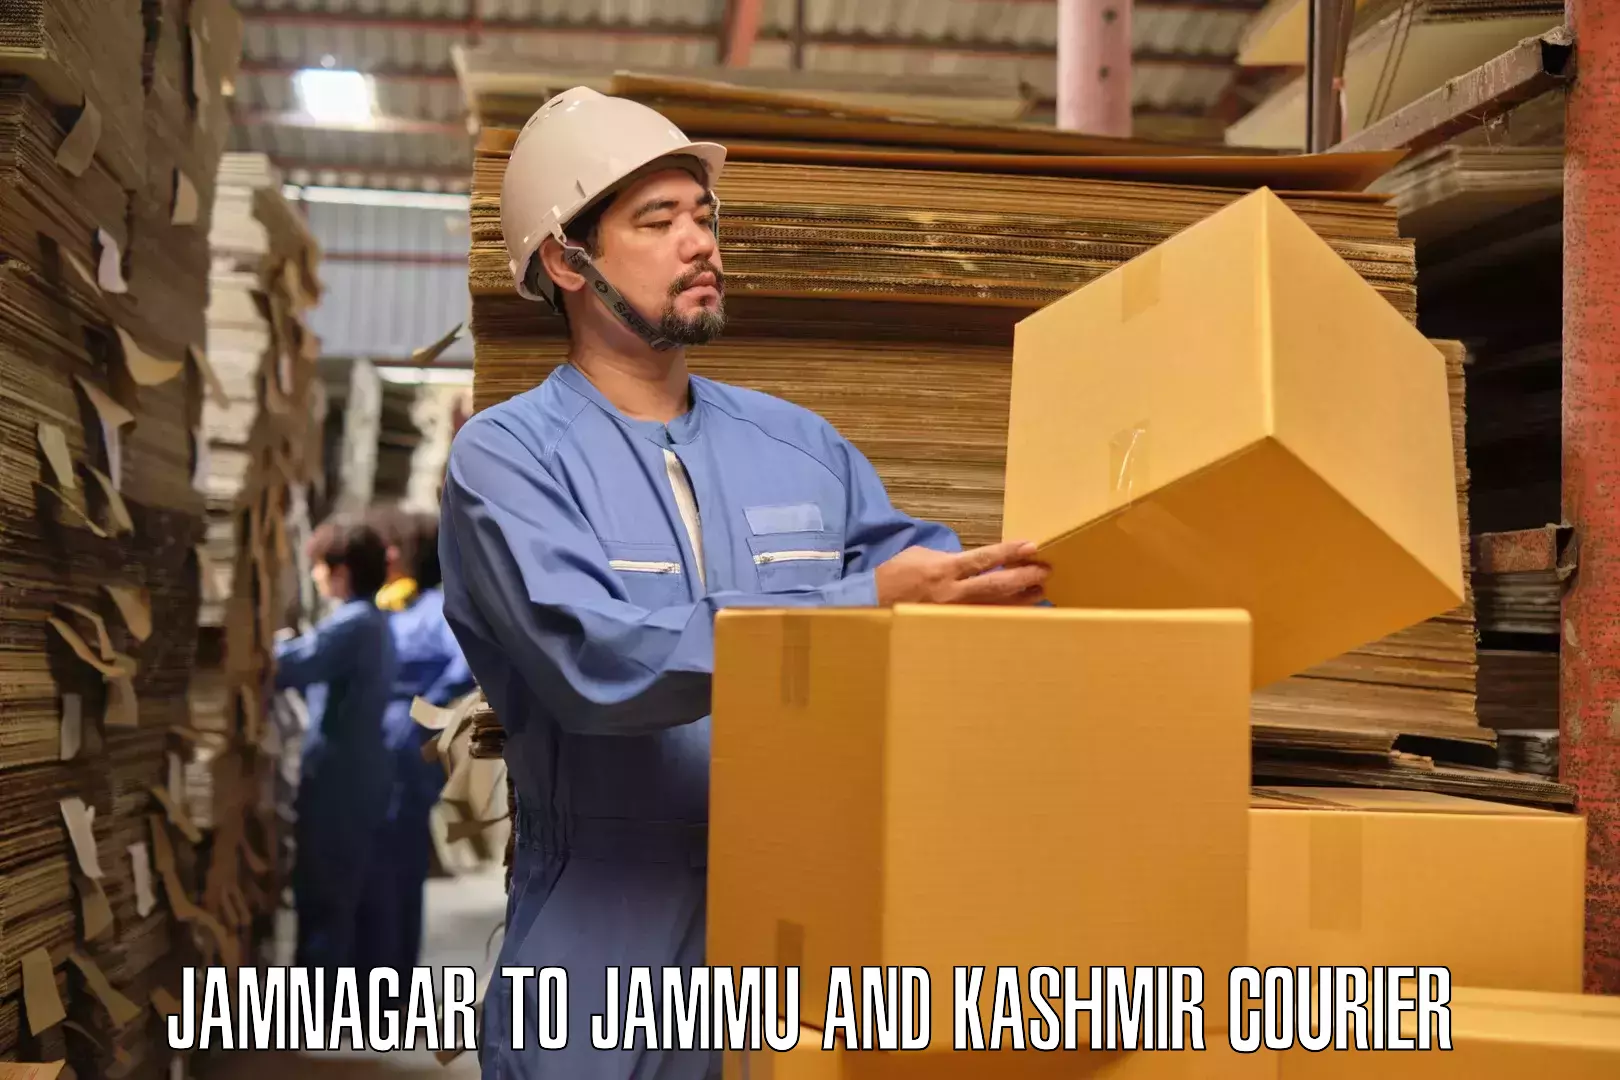 Furniture transport service Jamnagar to IIT Jammu